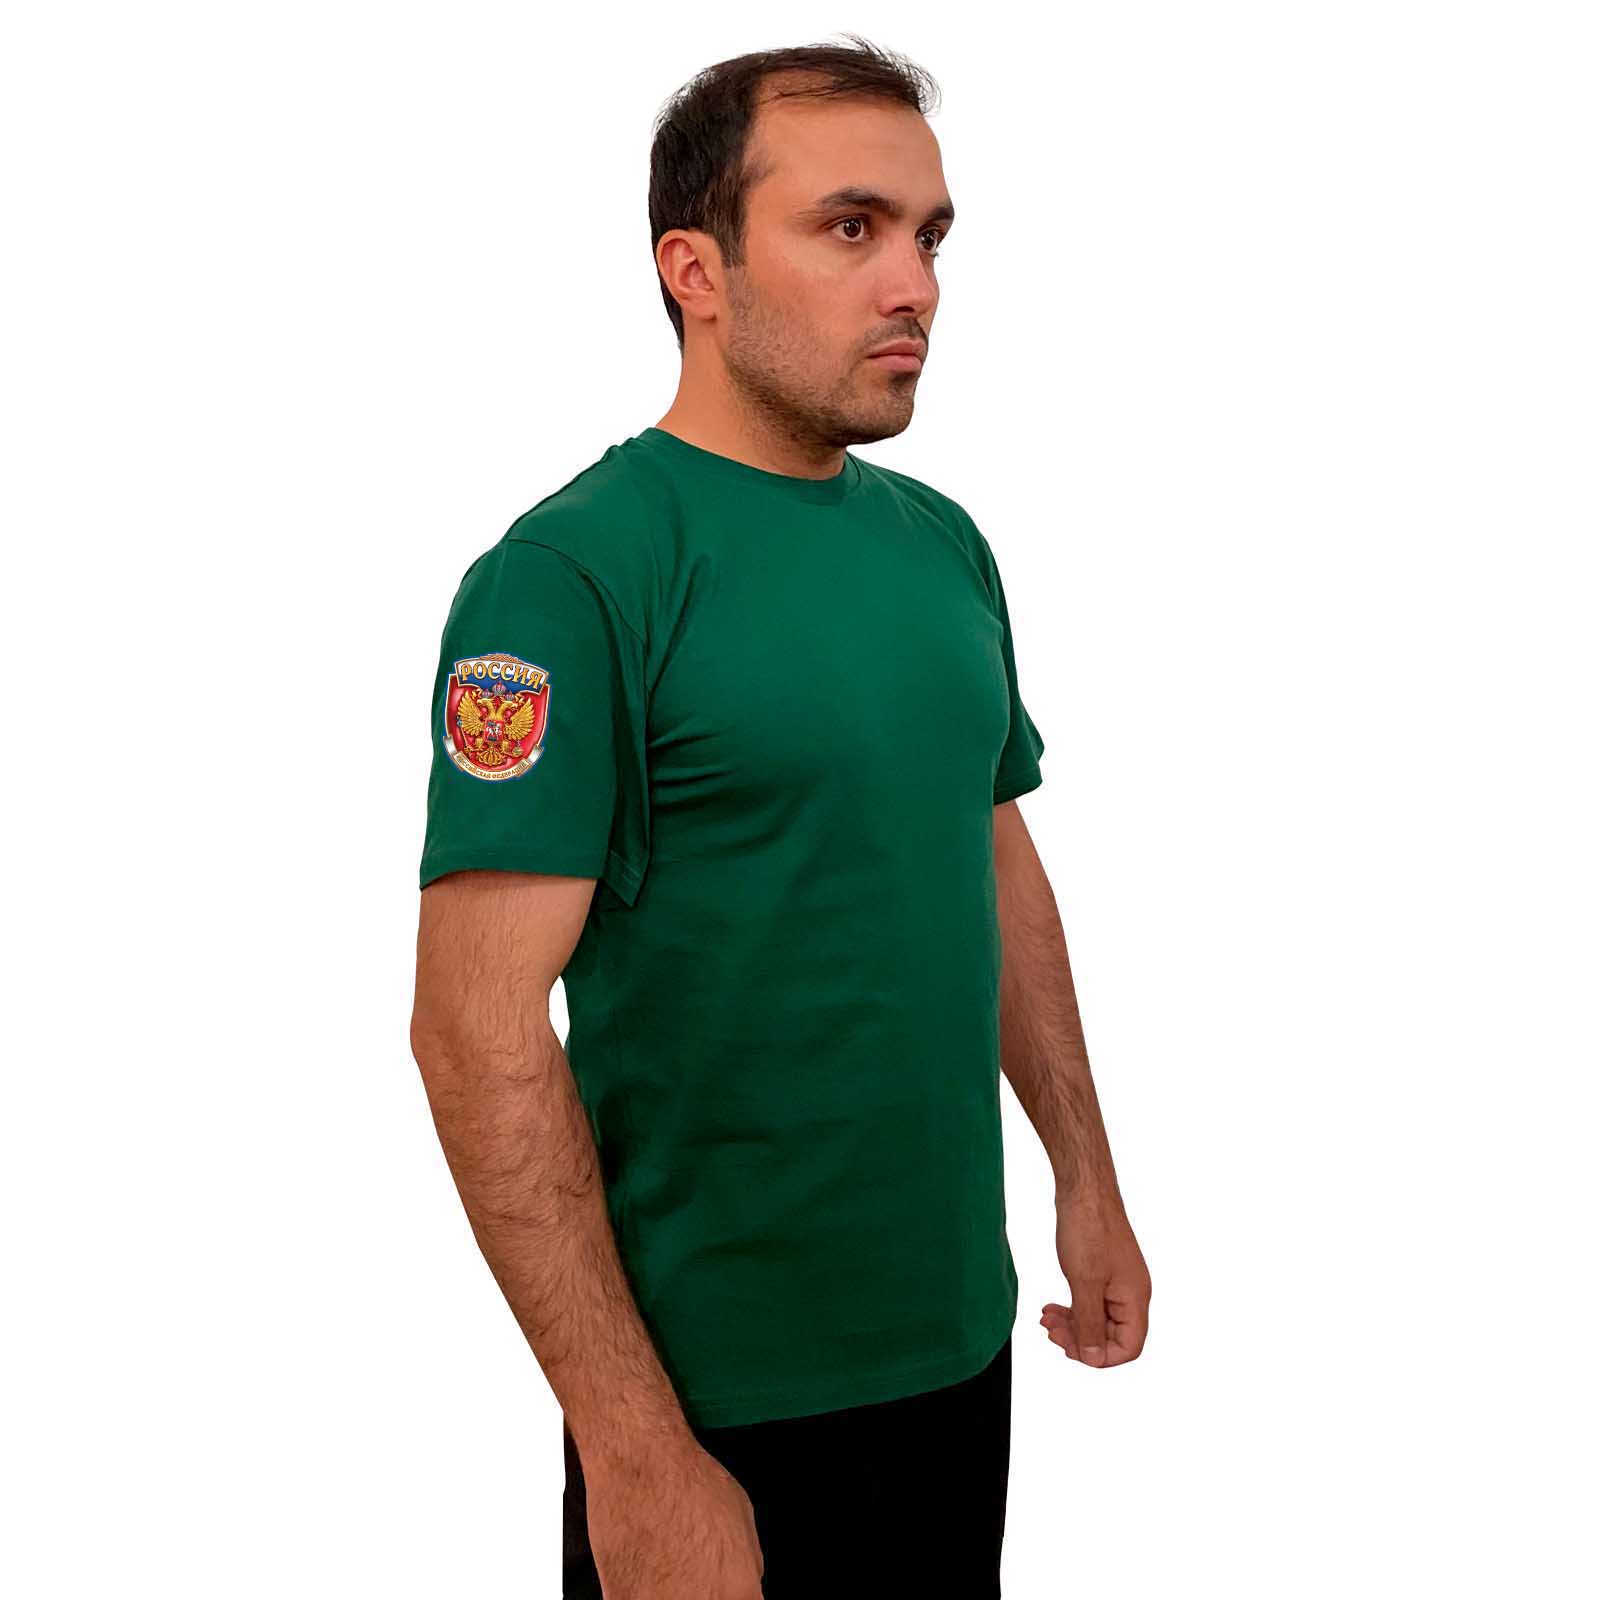 Зелёная футболка с термопринтом "Россия" на рукаве